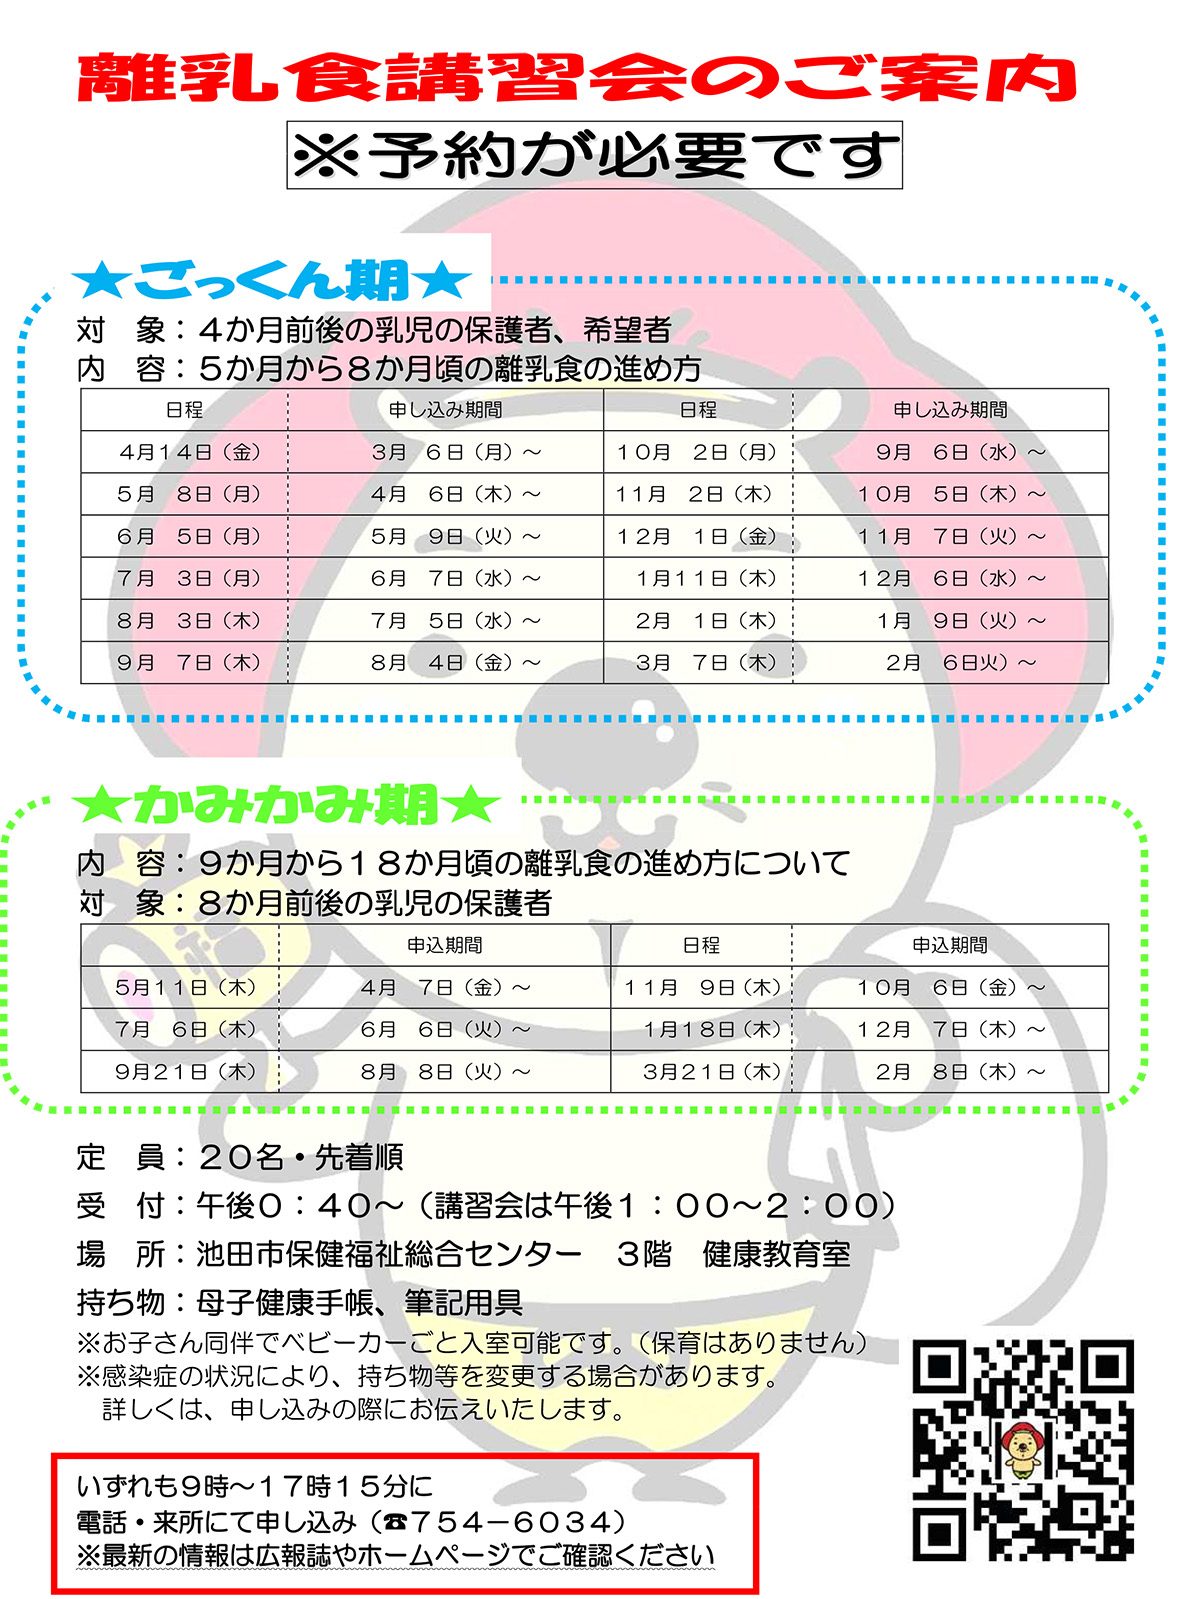 【予約制】離乳食講習会 9月7日開催ごっくん期